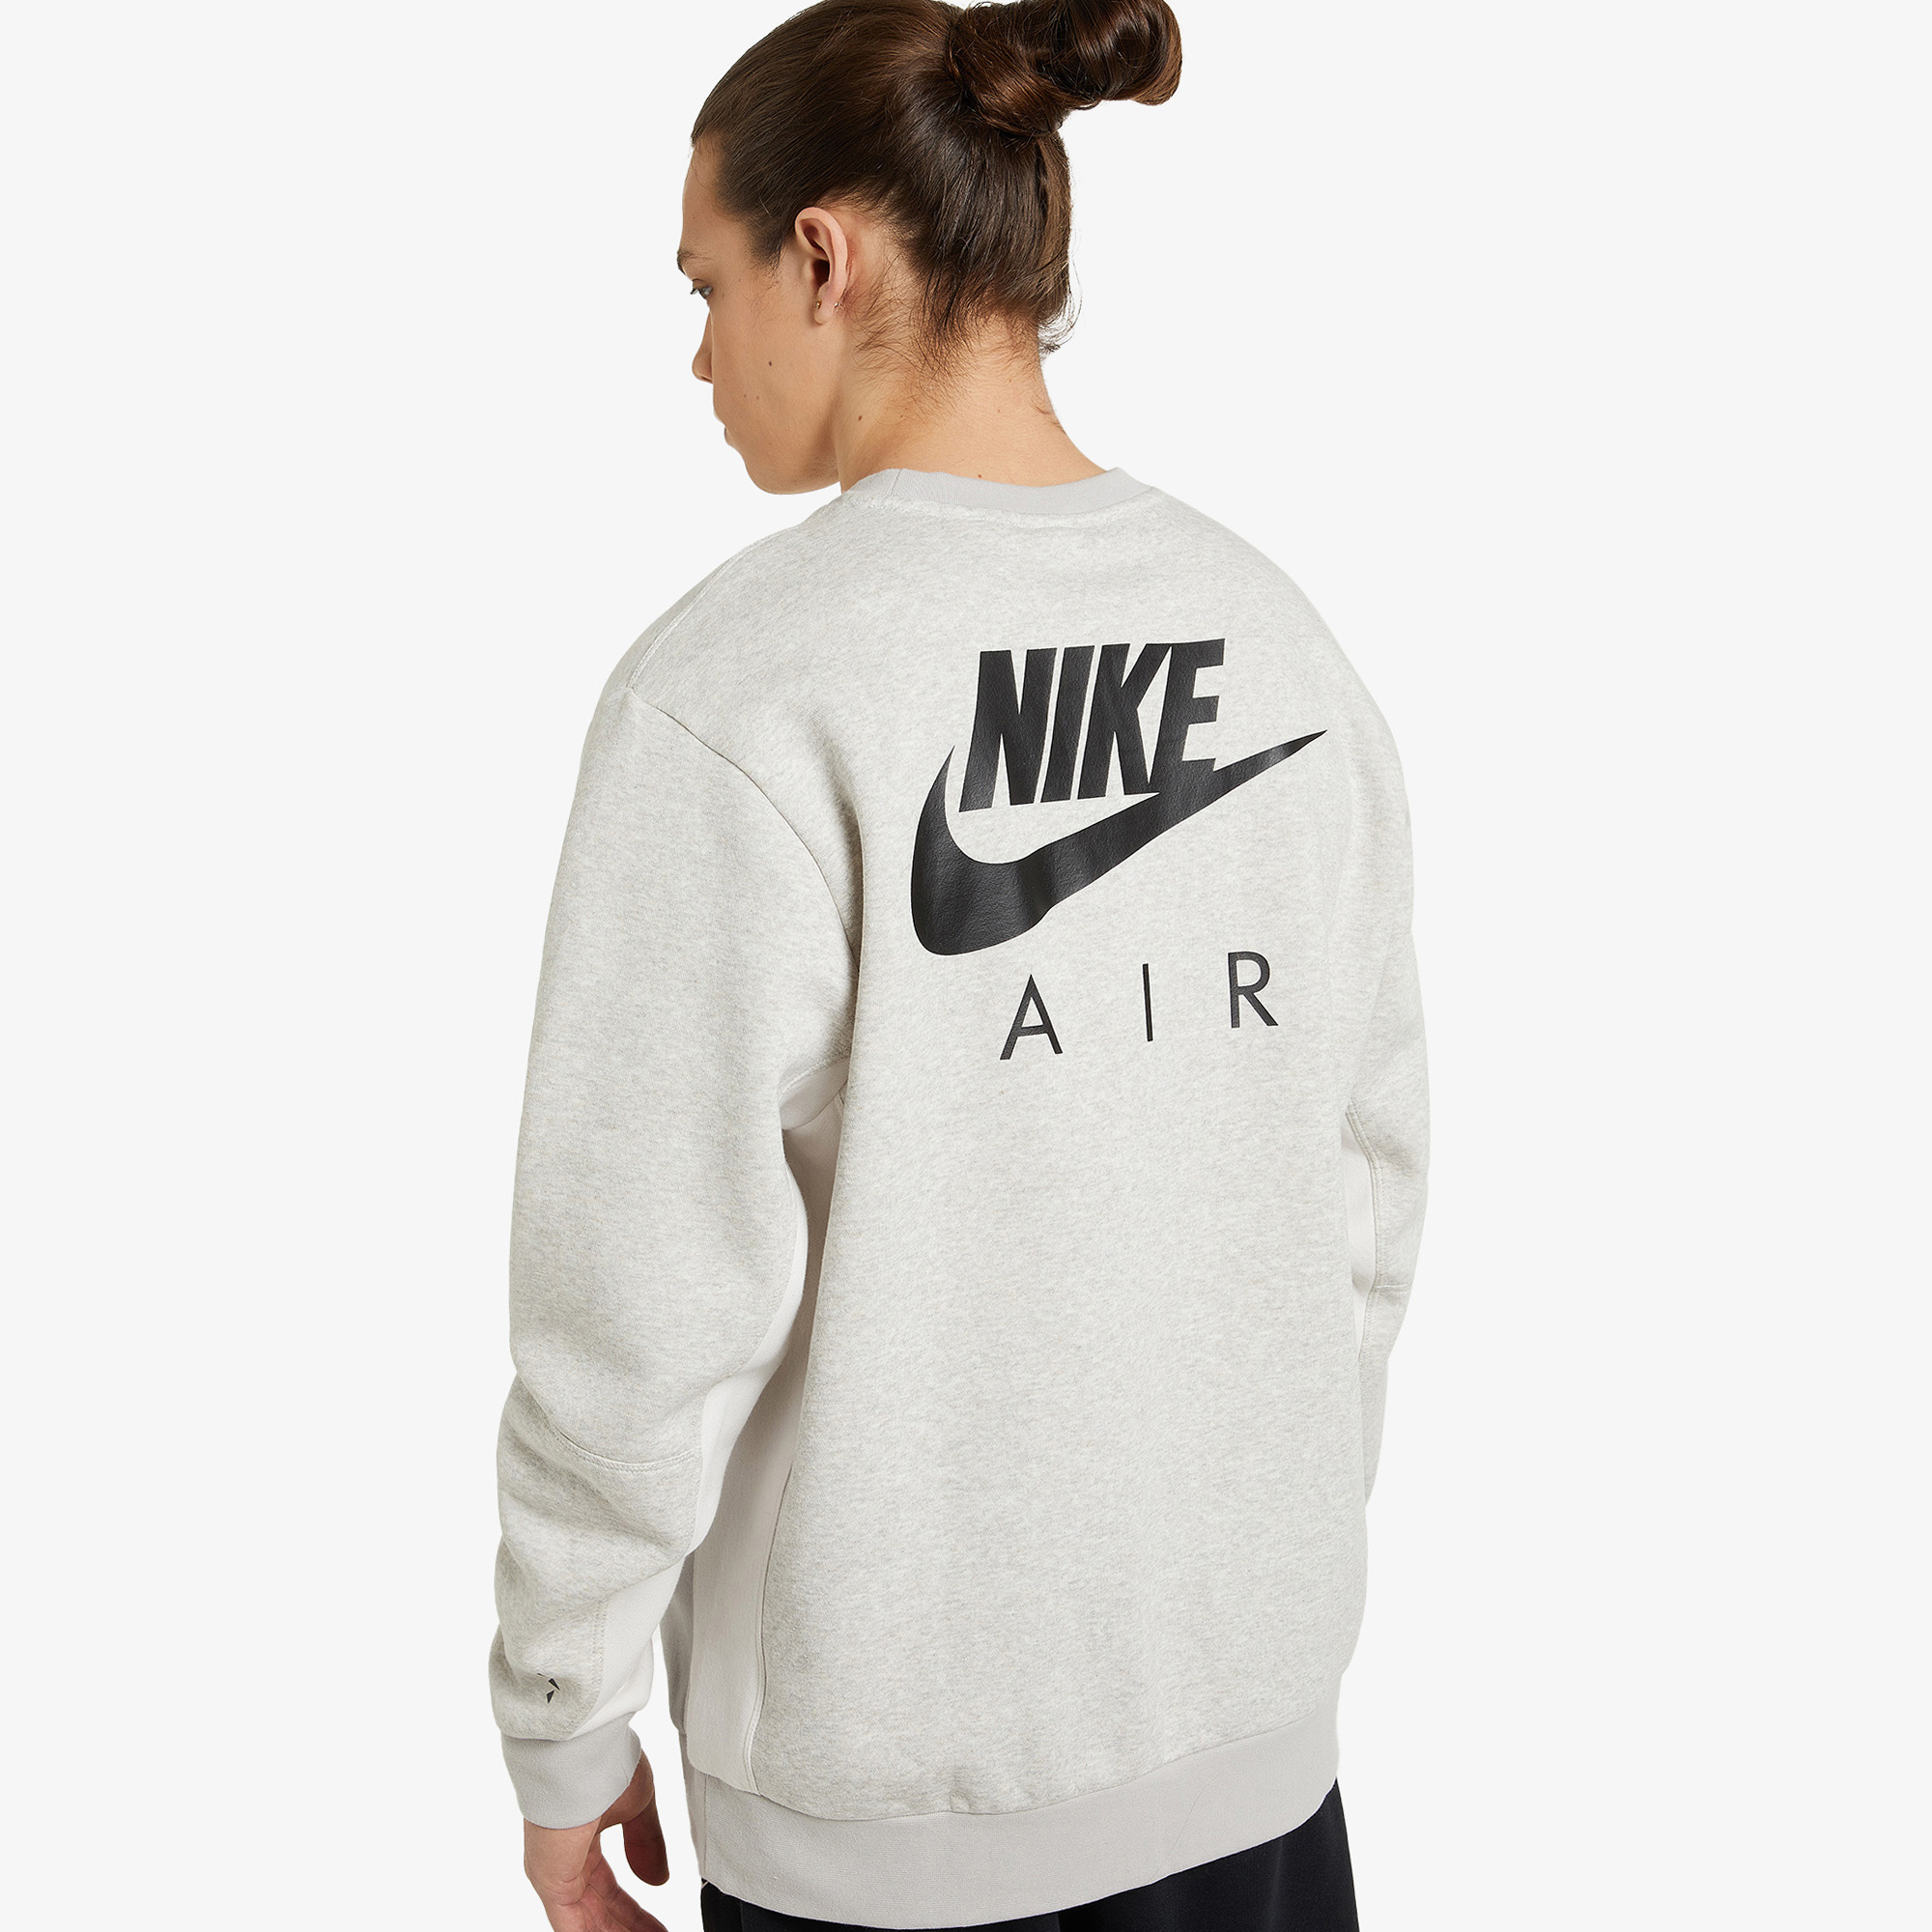 Джемперы Nike Nike Air Crew DM5207N06-012, цвет белый, размер 52-54 - фото 2